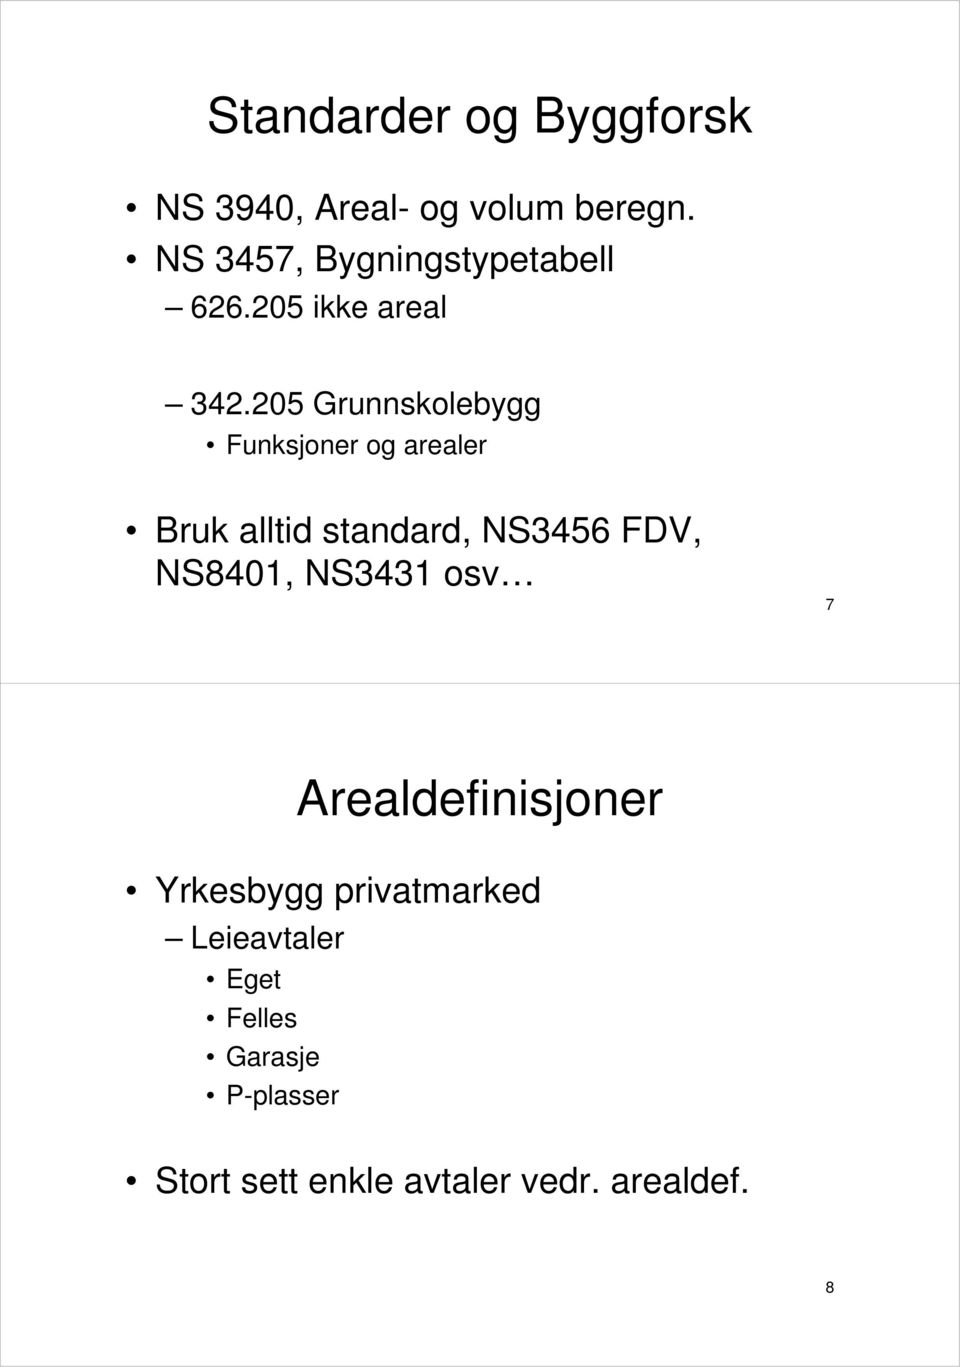 205 Grunnskolebygg Funksjoner og arealer Bruk alltid standard, NS3456 FDV, NS8401,